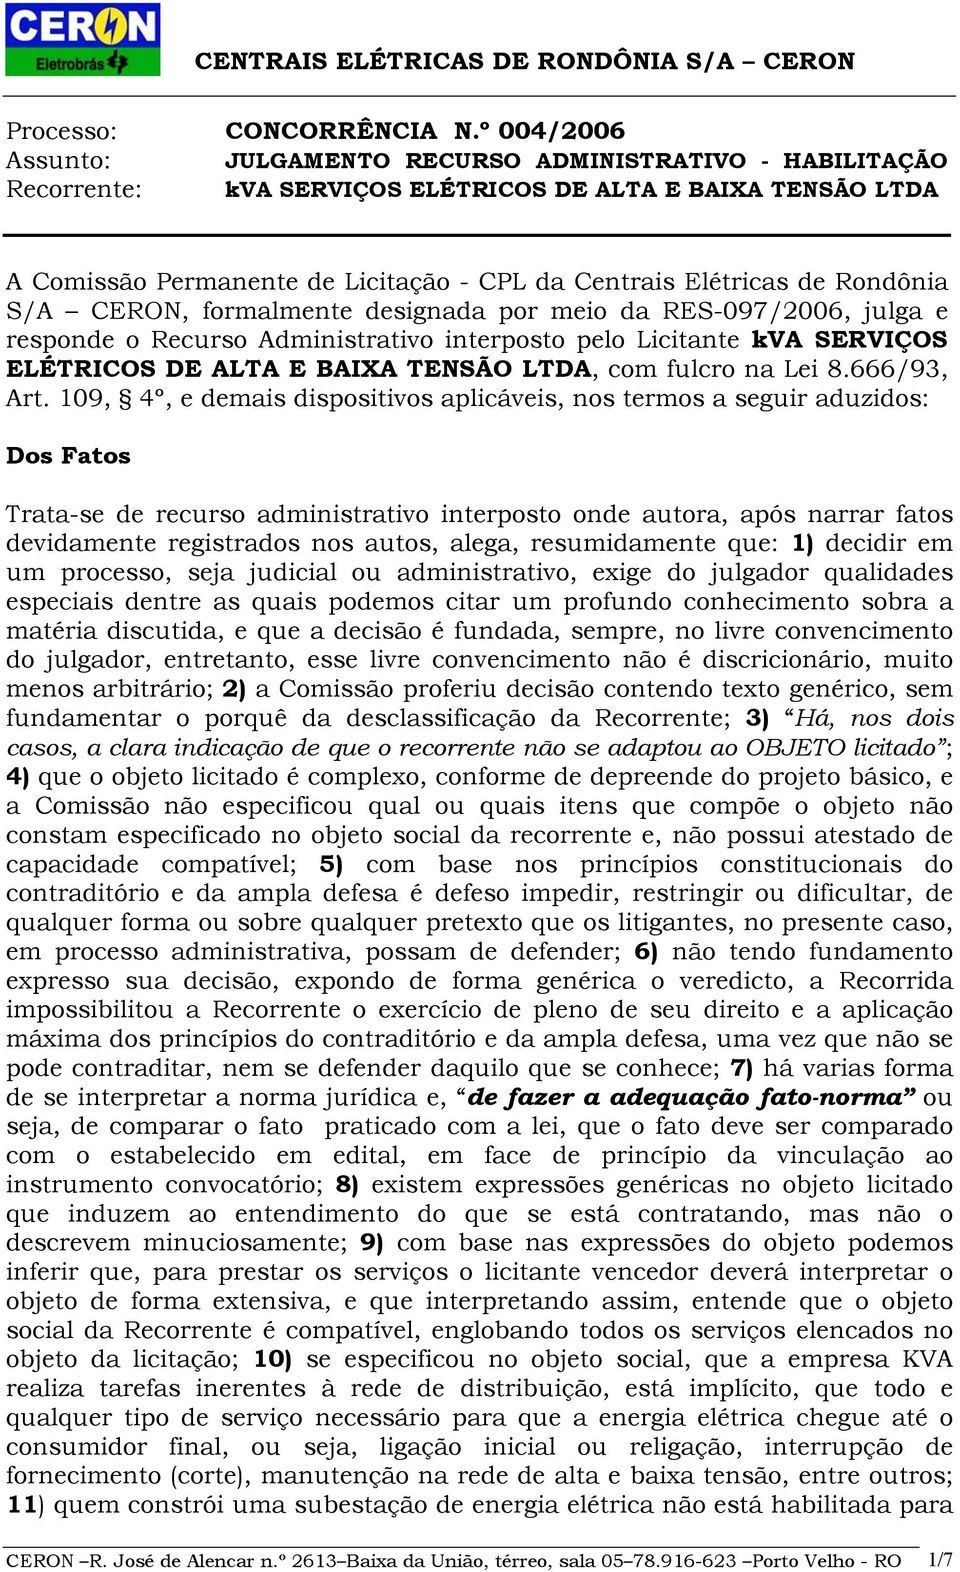 Rondônia S/A CERON, formalmente designada por meio da RES-097/2006, julga e responde o Recurso Administrativo interposto pelo Licitante kva SERVIÇOS ELÉTRICOS DE ALTA E BAIXA TENSÃO LTDA, com fulcro